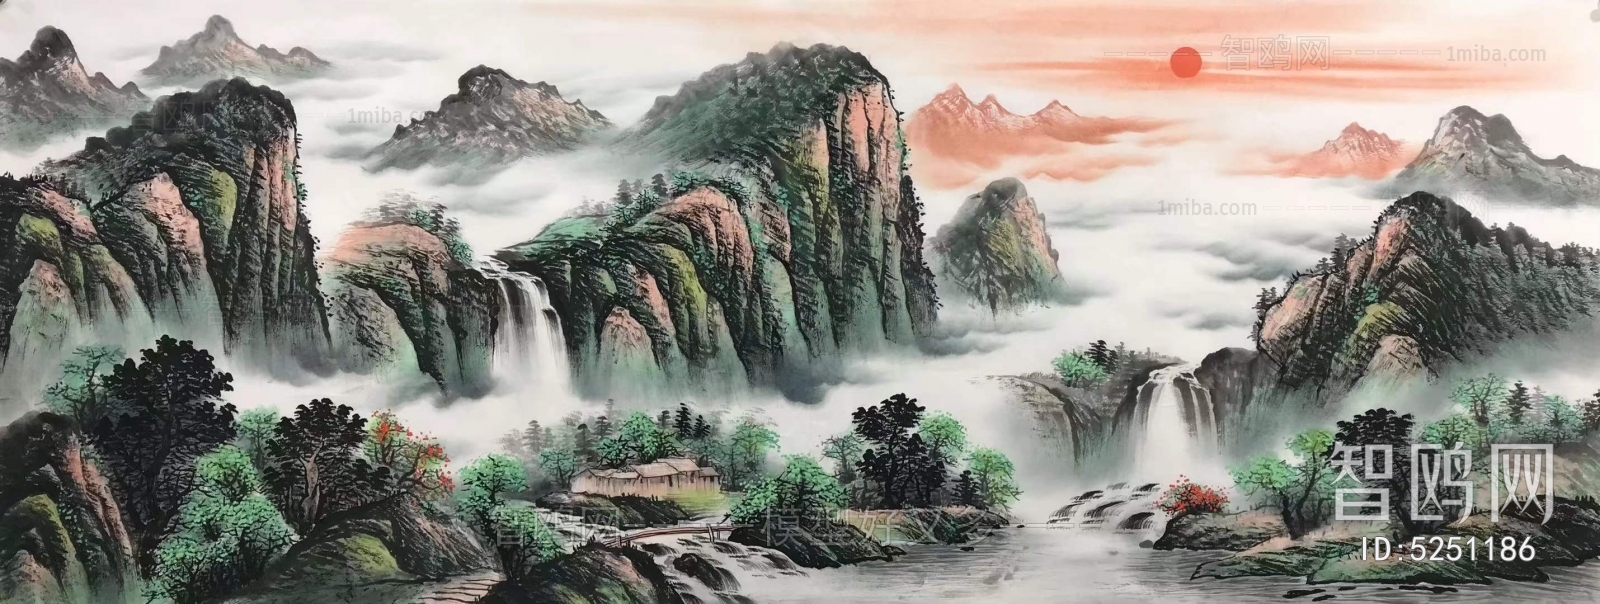 中国画水墨彩墨山水画